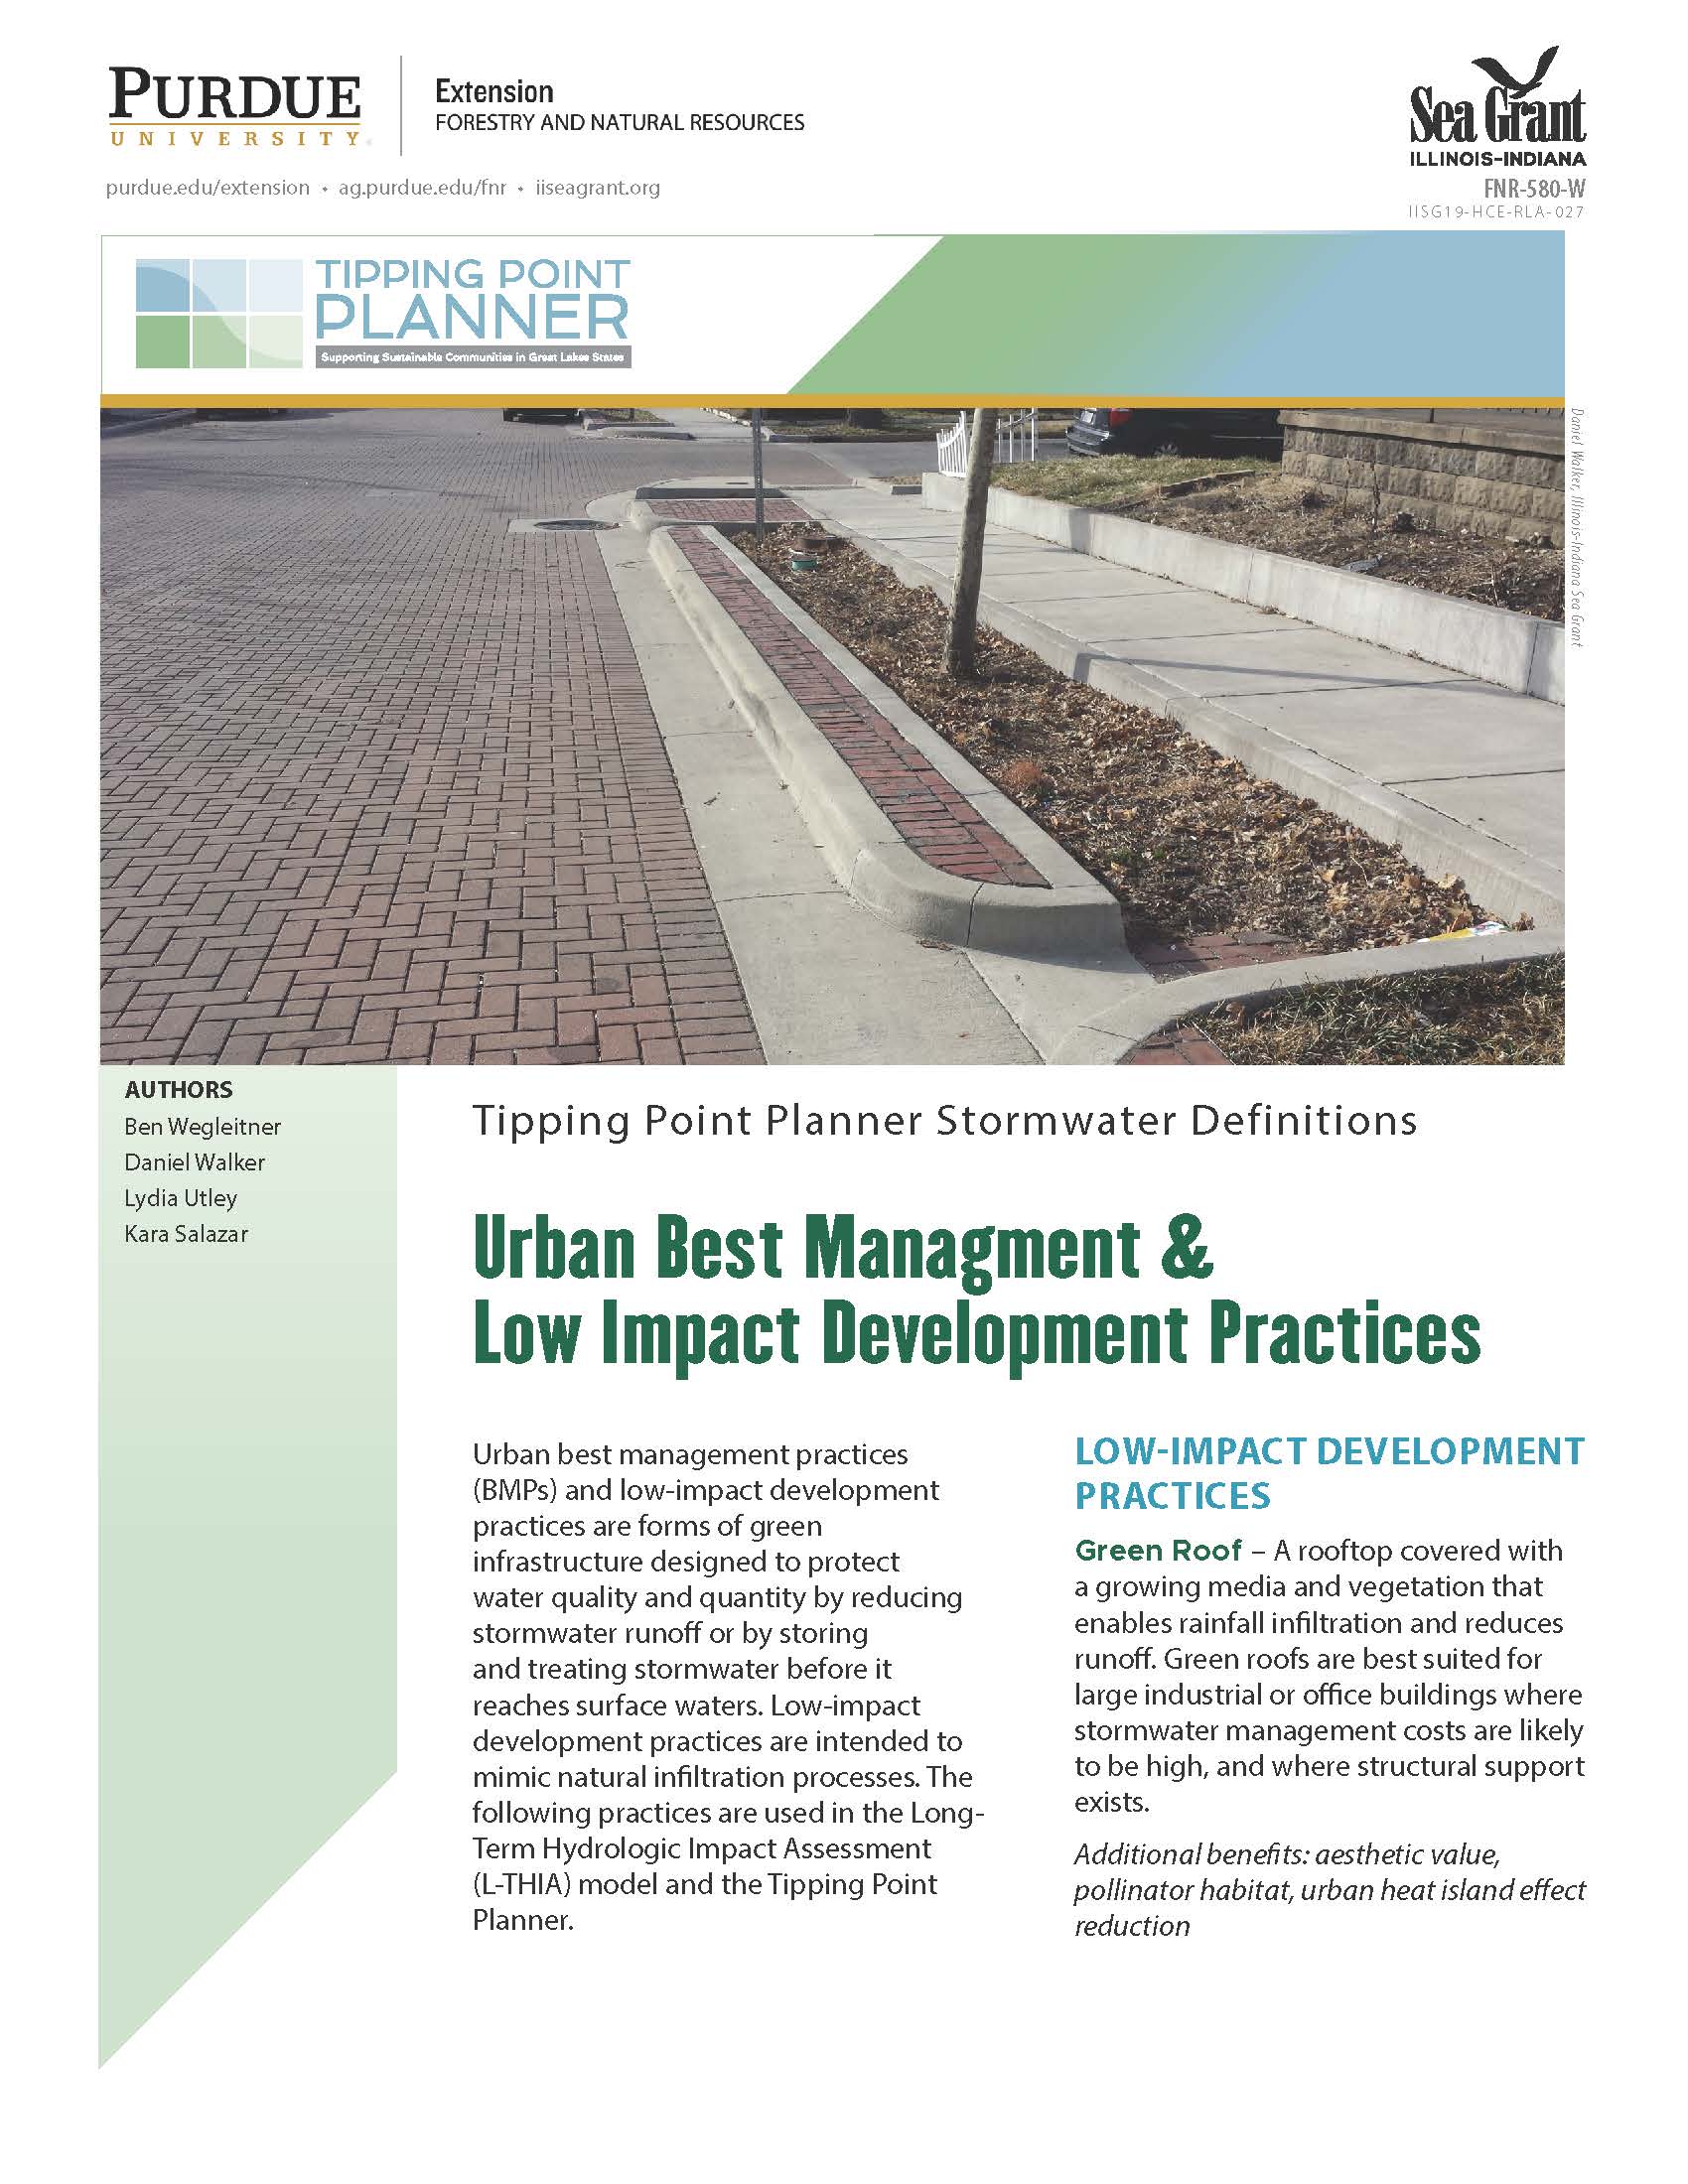 Urban Best Management & Low Impact Development Practices